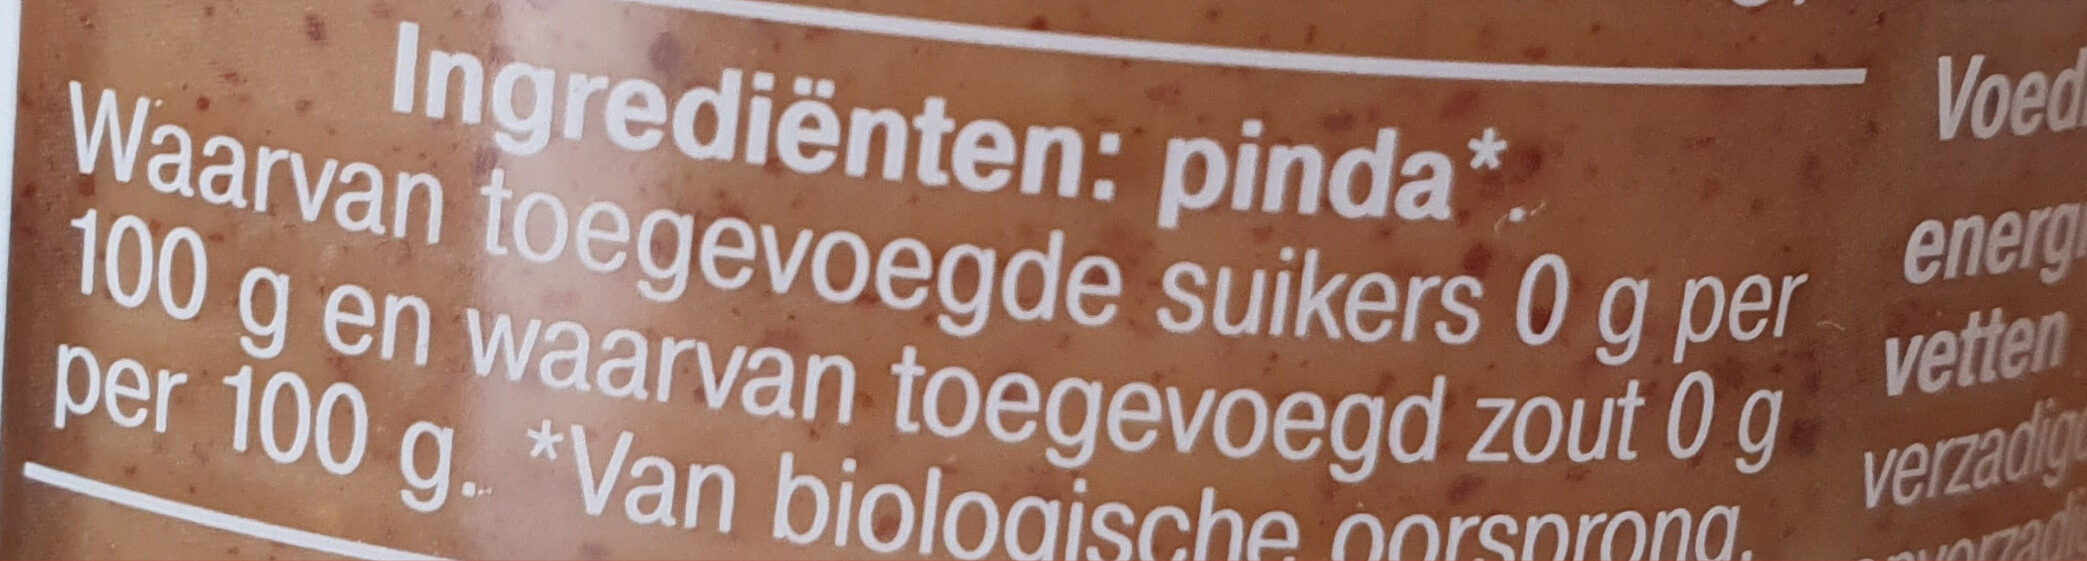 100% pindakaas met stukjes pinda - Ingredienser - nl